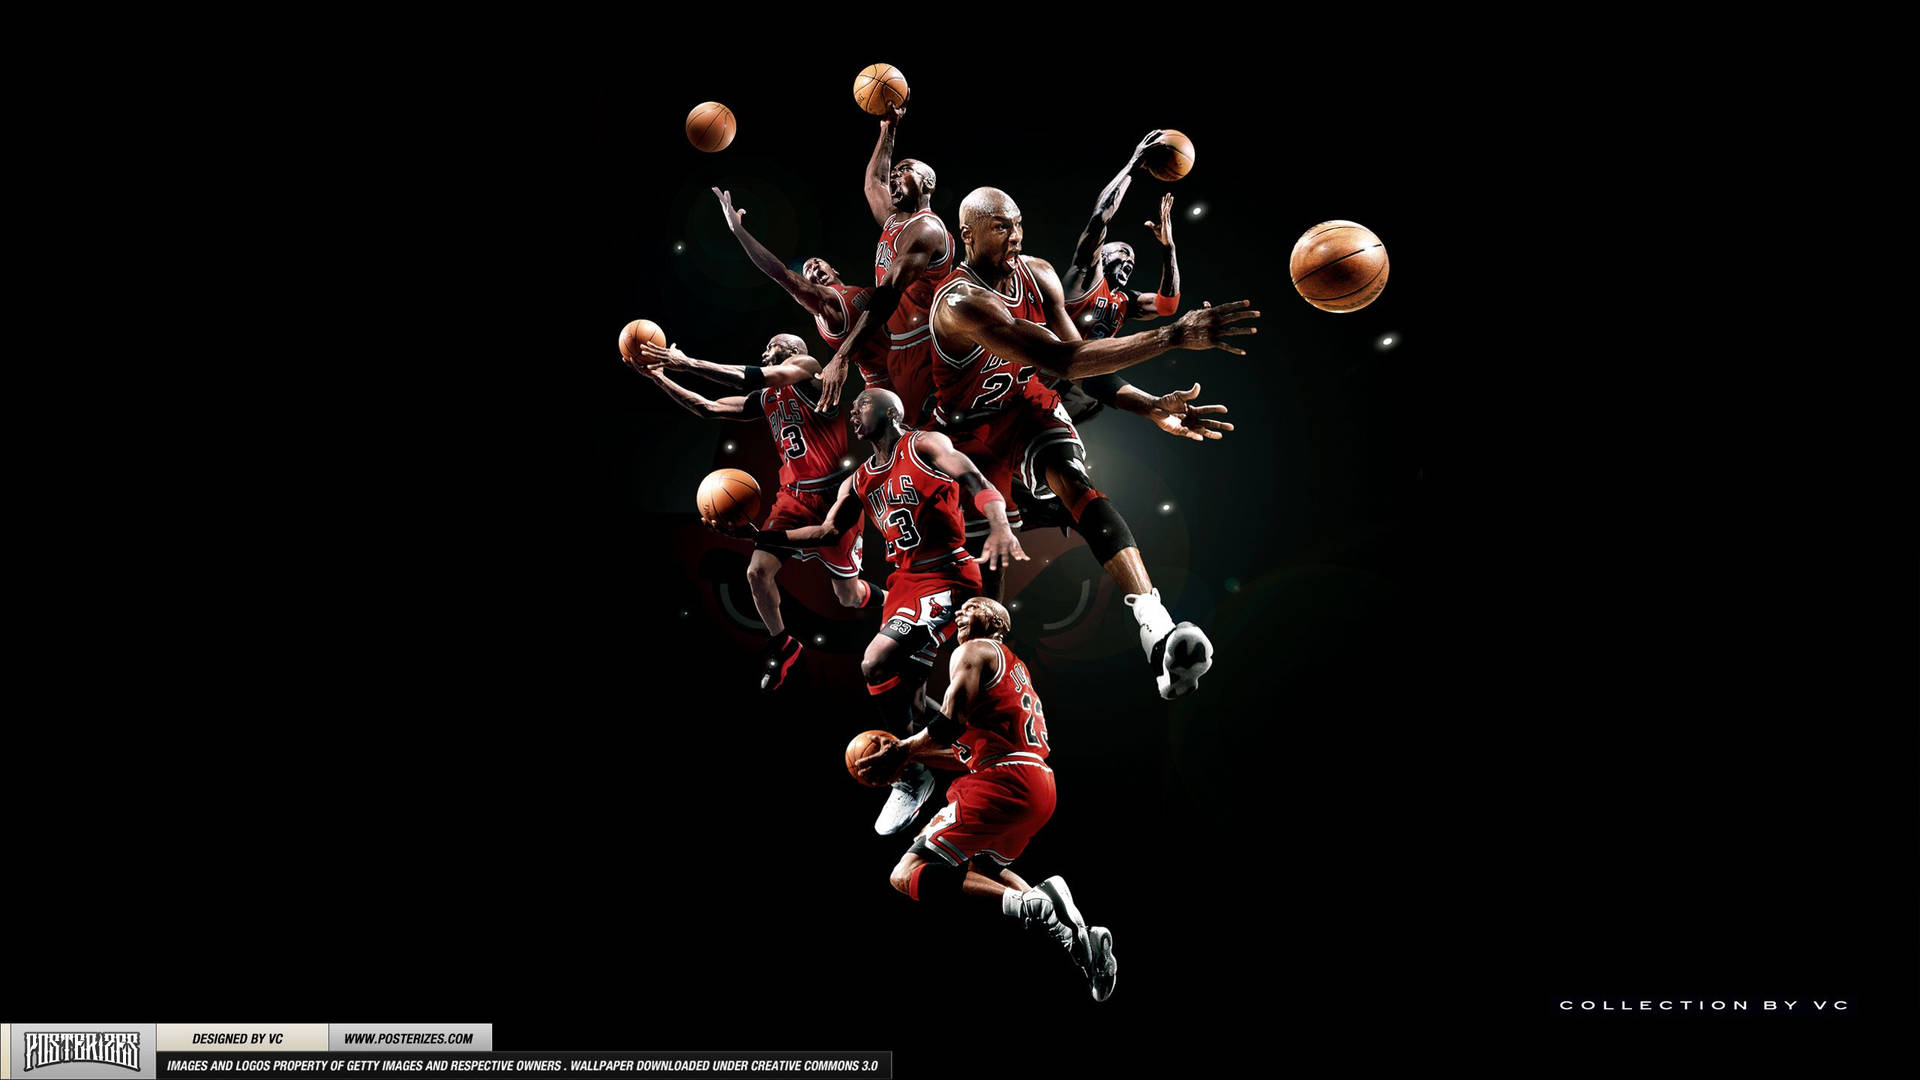 Poster Of Michael Jordan Hd Picture